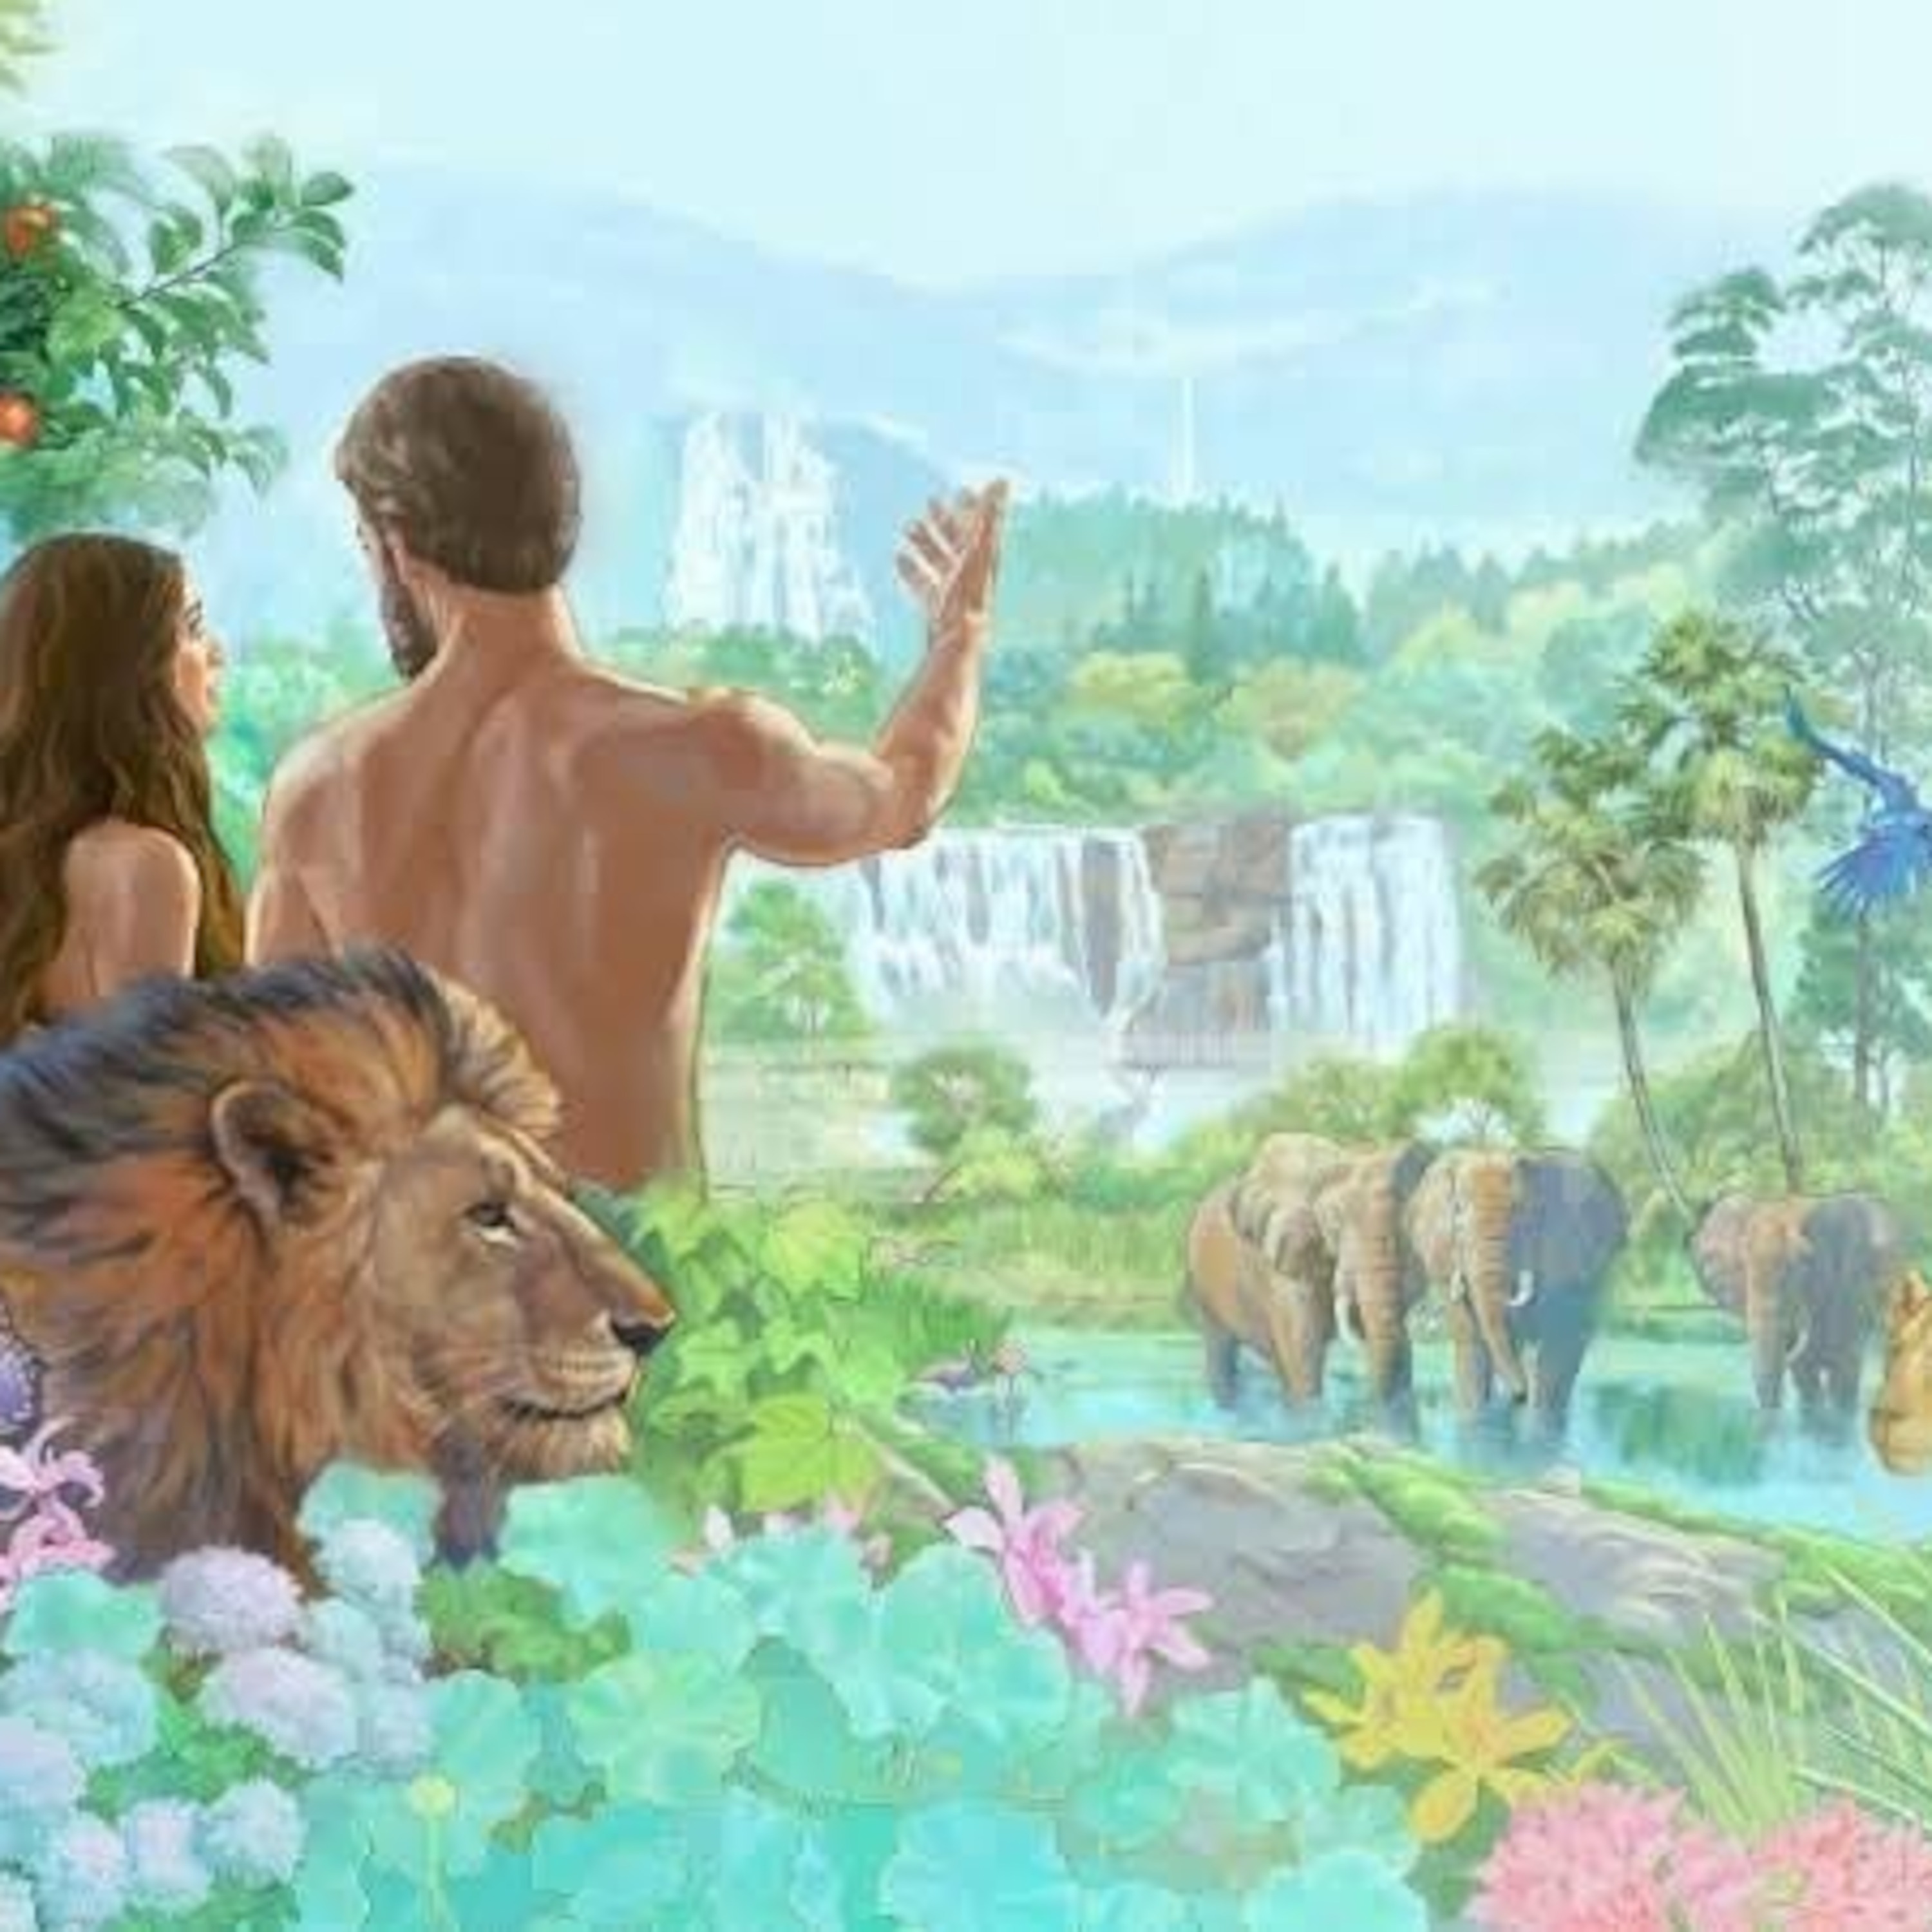 Адам и ева в раю свидетели Иеговы